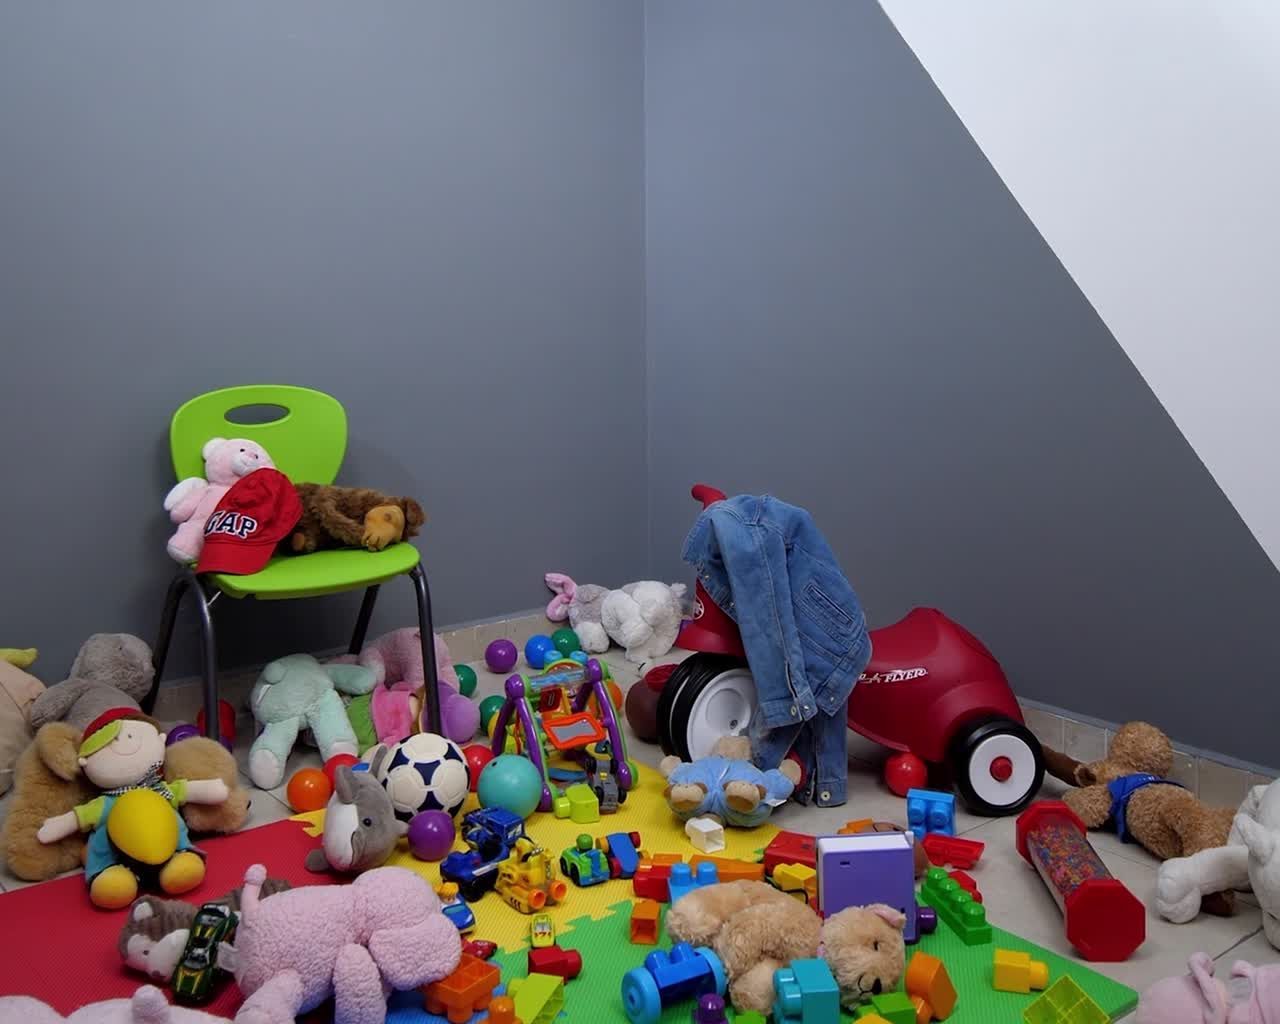 DIY Organiza y decora el cuarto de ni?os - DIY Organiza y decora el cuarto de ni?os -   18 diy Muebles infantiles ideas